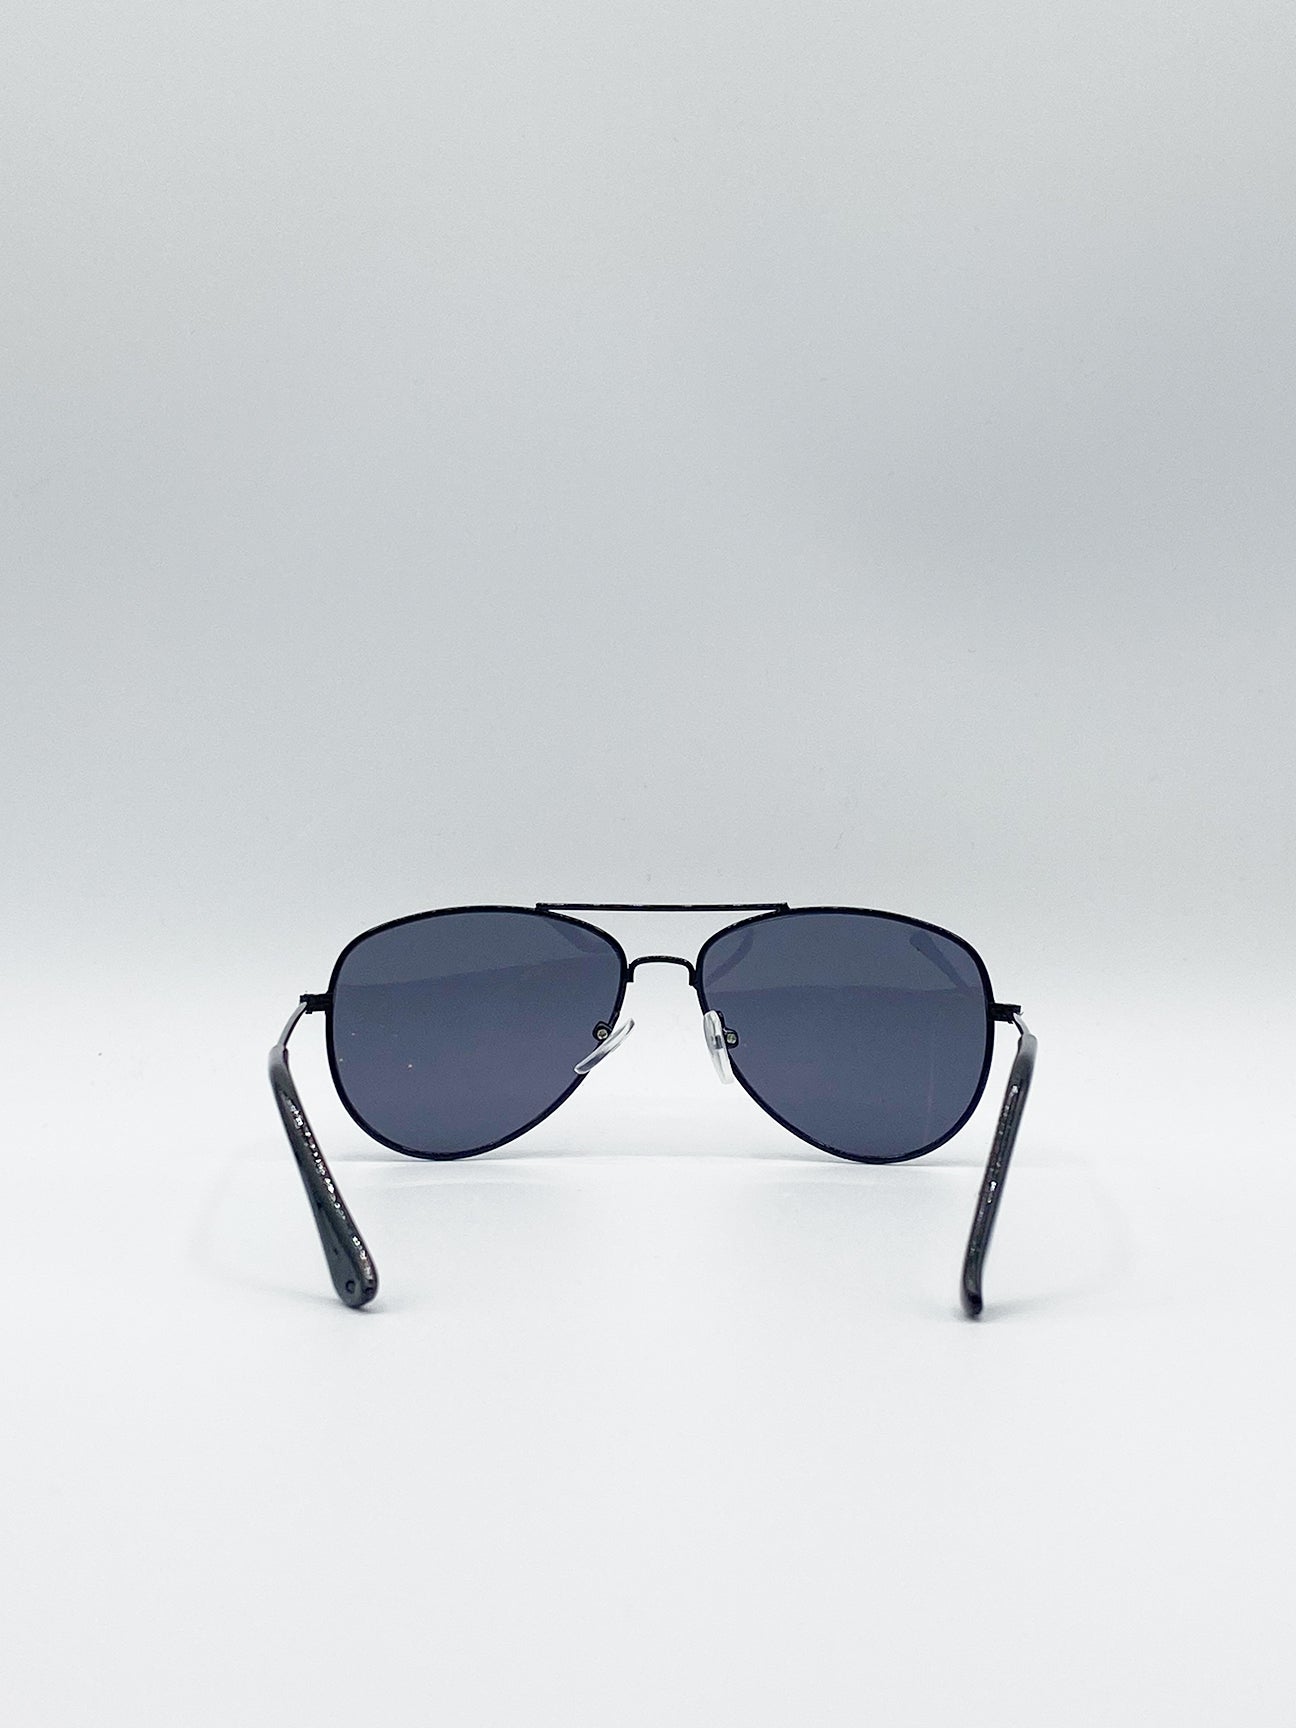 Black Children's Aviator Sunglasses With Black Lenses